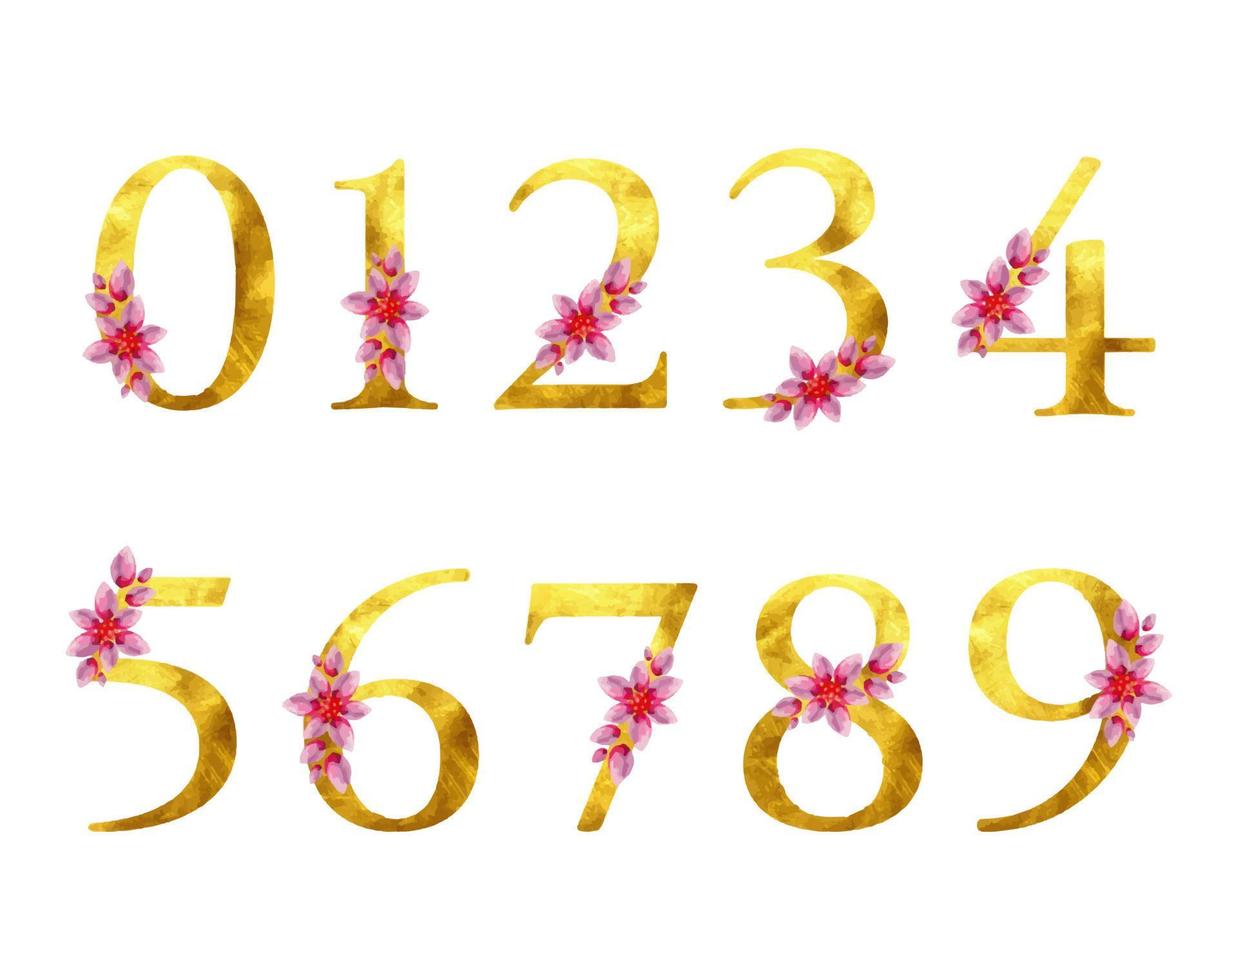 oro número set aislado textura diseño elemento ornato gráfico floral tarjeta de felicitación plantillas boda invitaciones cumpleaños fiesta rosa flor dorado signo lujo fuente teclear acuarela botánico pintura vector